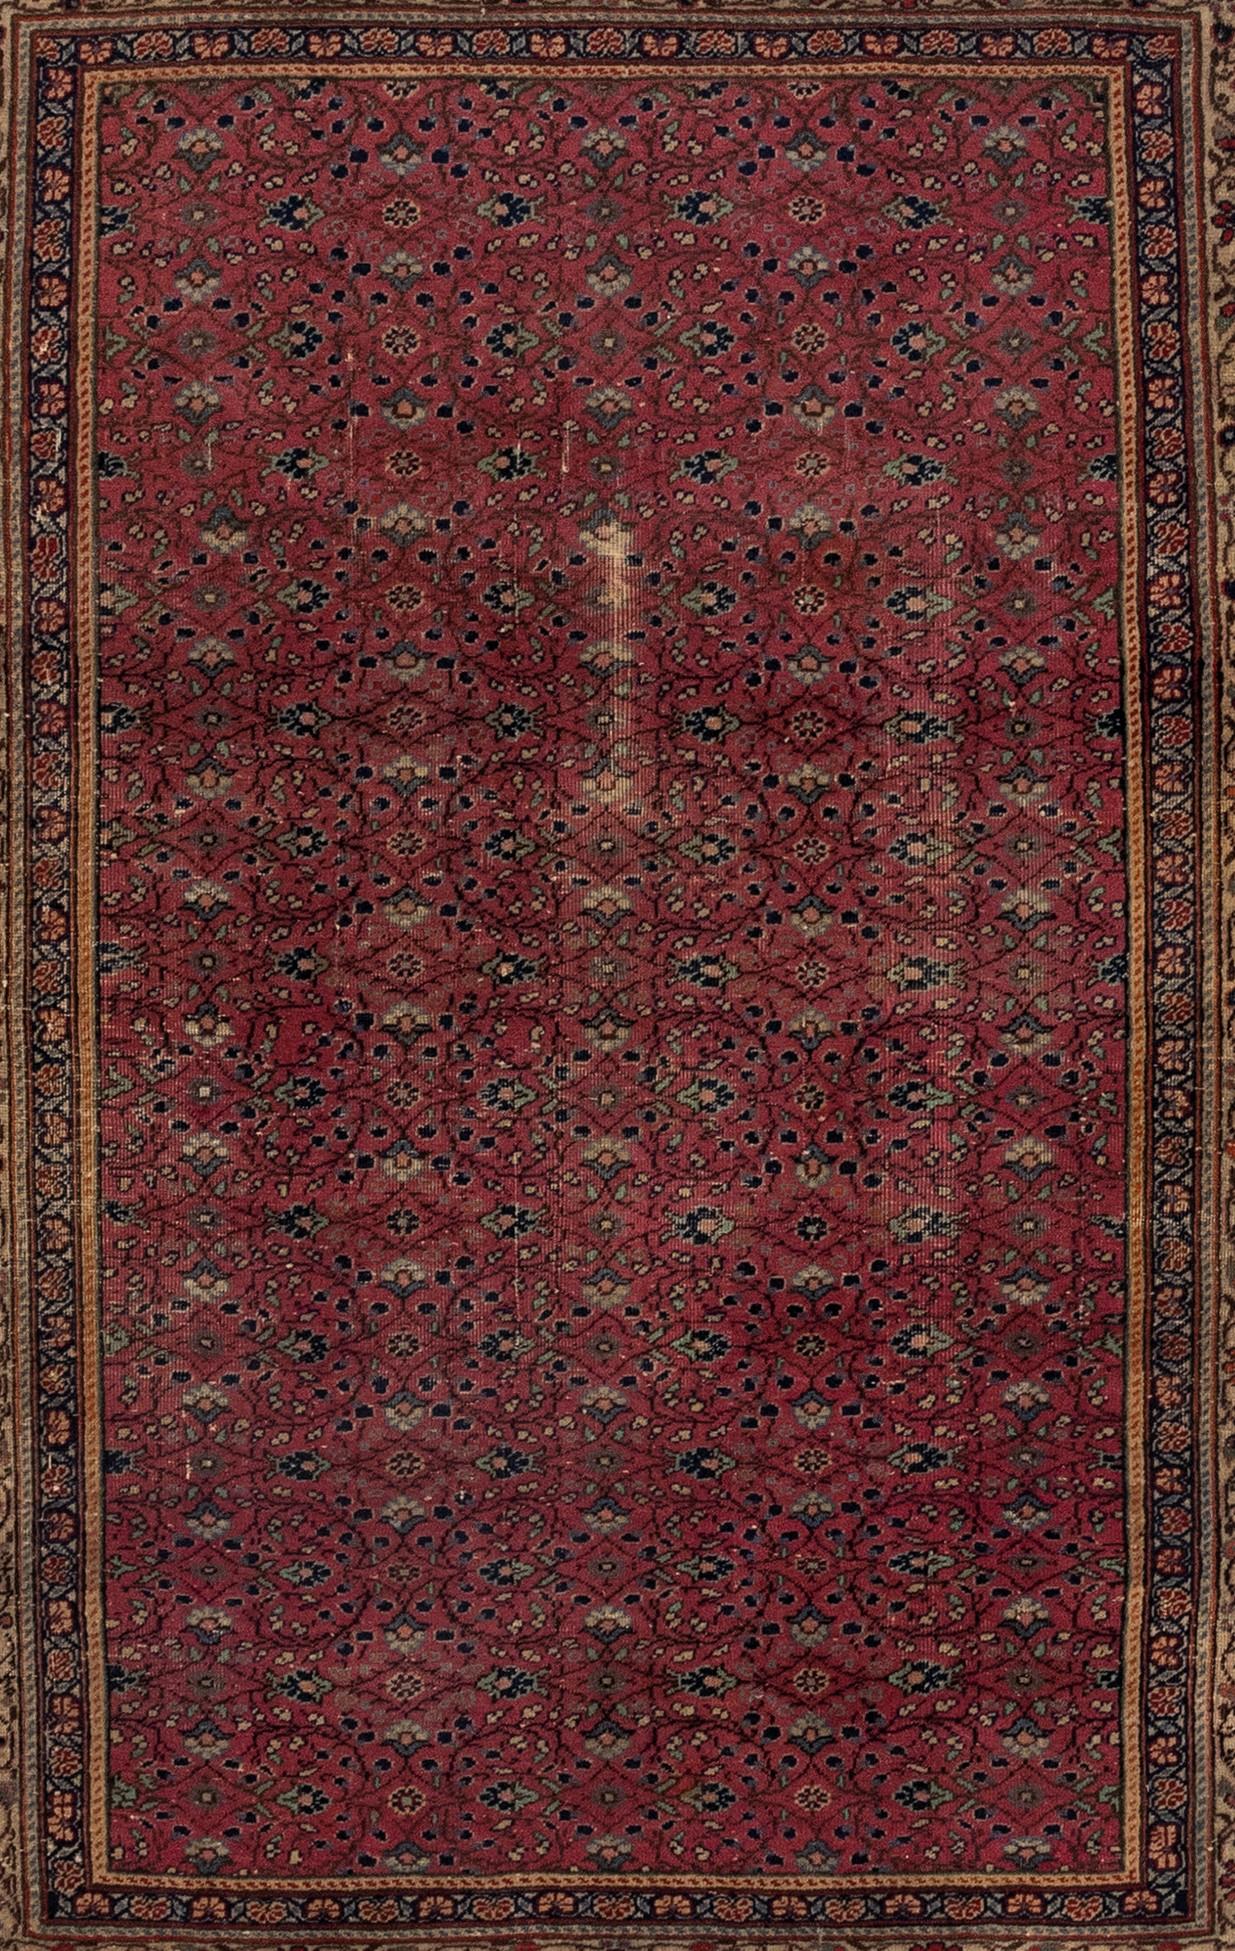 Dieser exquisite viktorianische Teppich aus dem 19. Jahrhundert zeichnet sich durch ein beeindruckendes botanisches Muster auf einem prächtigen burgunderroten Wollgrund aus. Seine handgeknüpfte Verarbeitung macht ihn zu einer idealen Wahl für